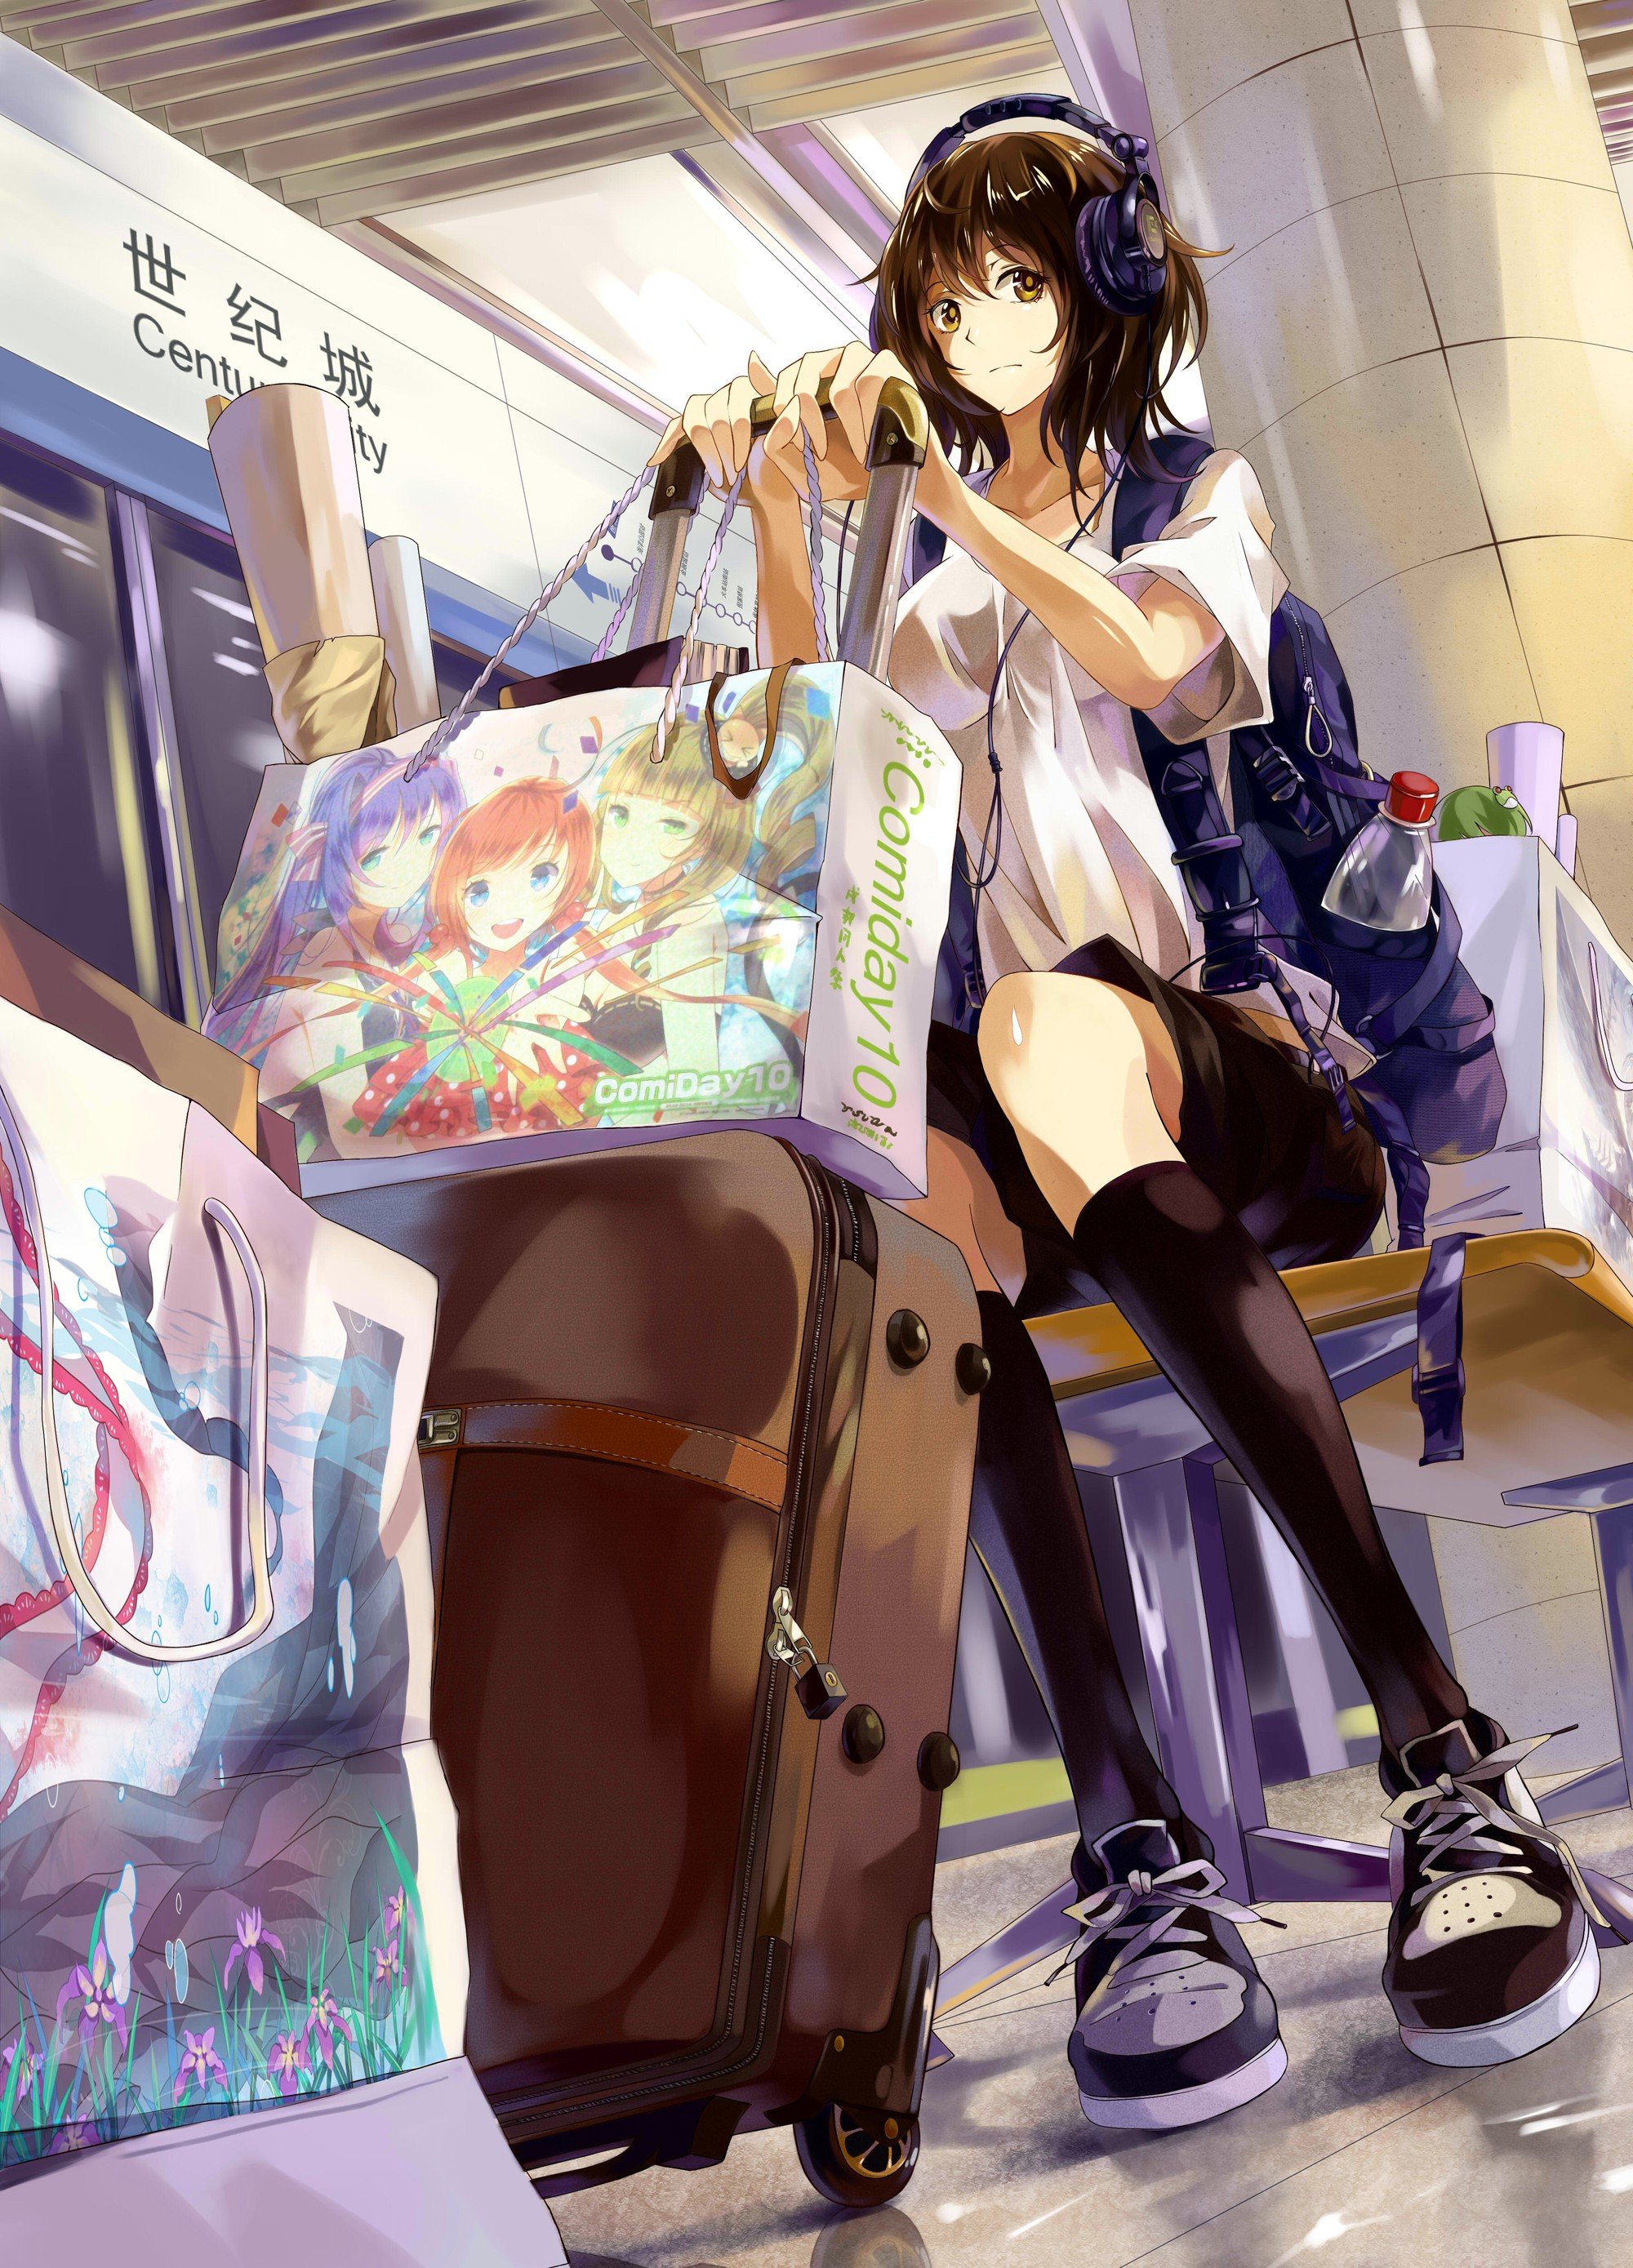 Anime girl 4K Wallpaper, Alone, Fantasy, 5K, Fantasy, #3